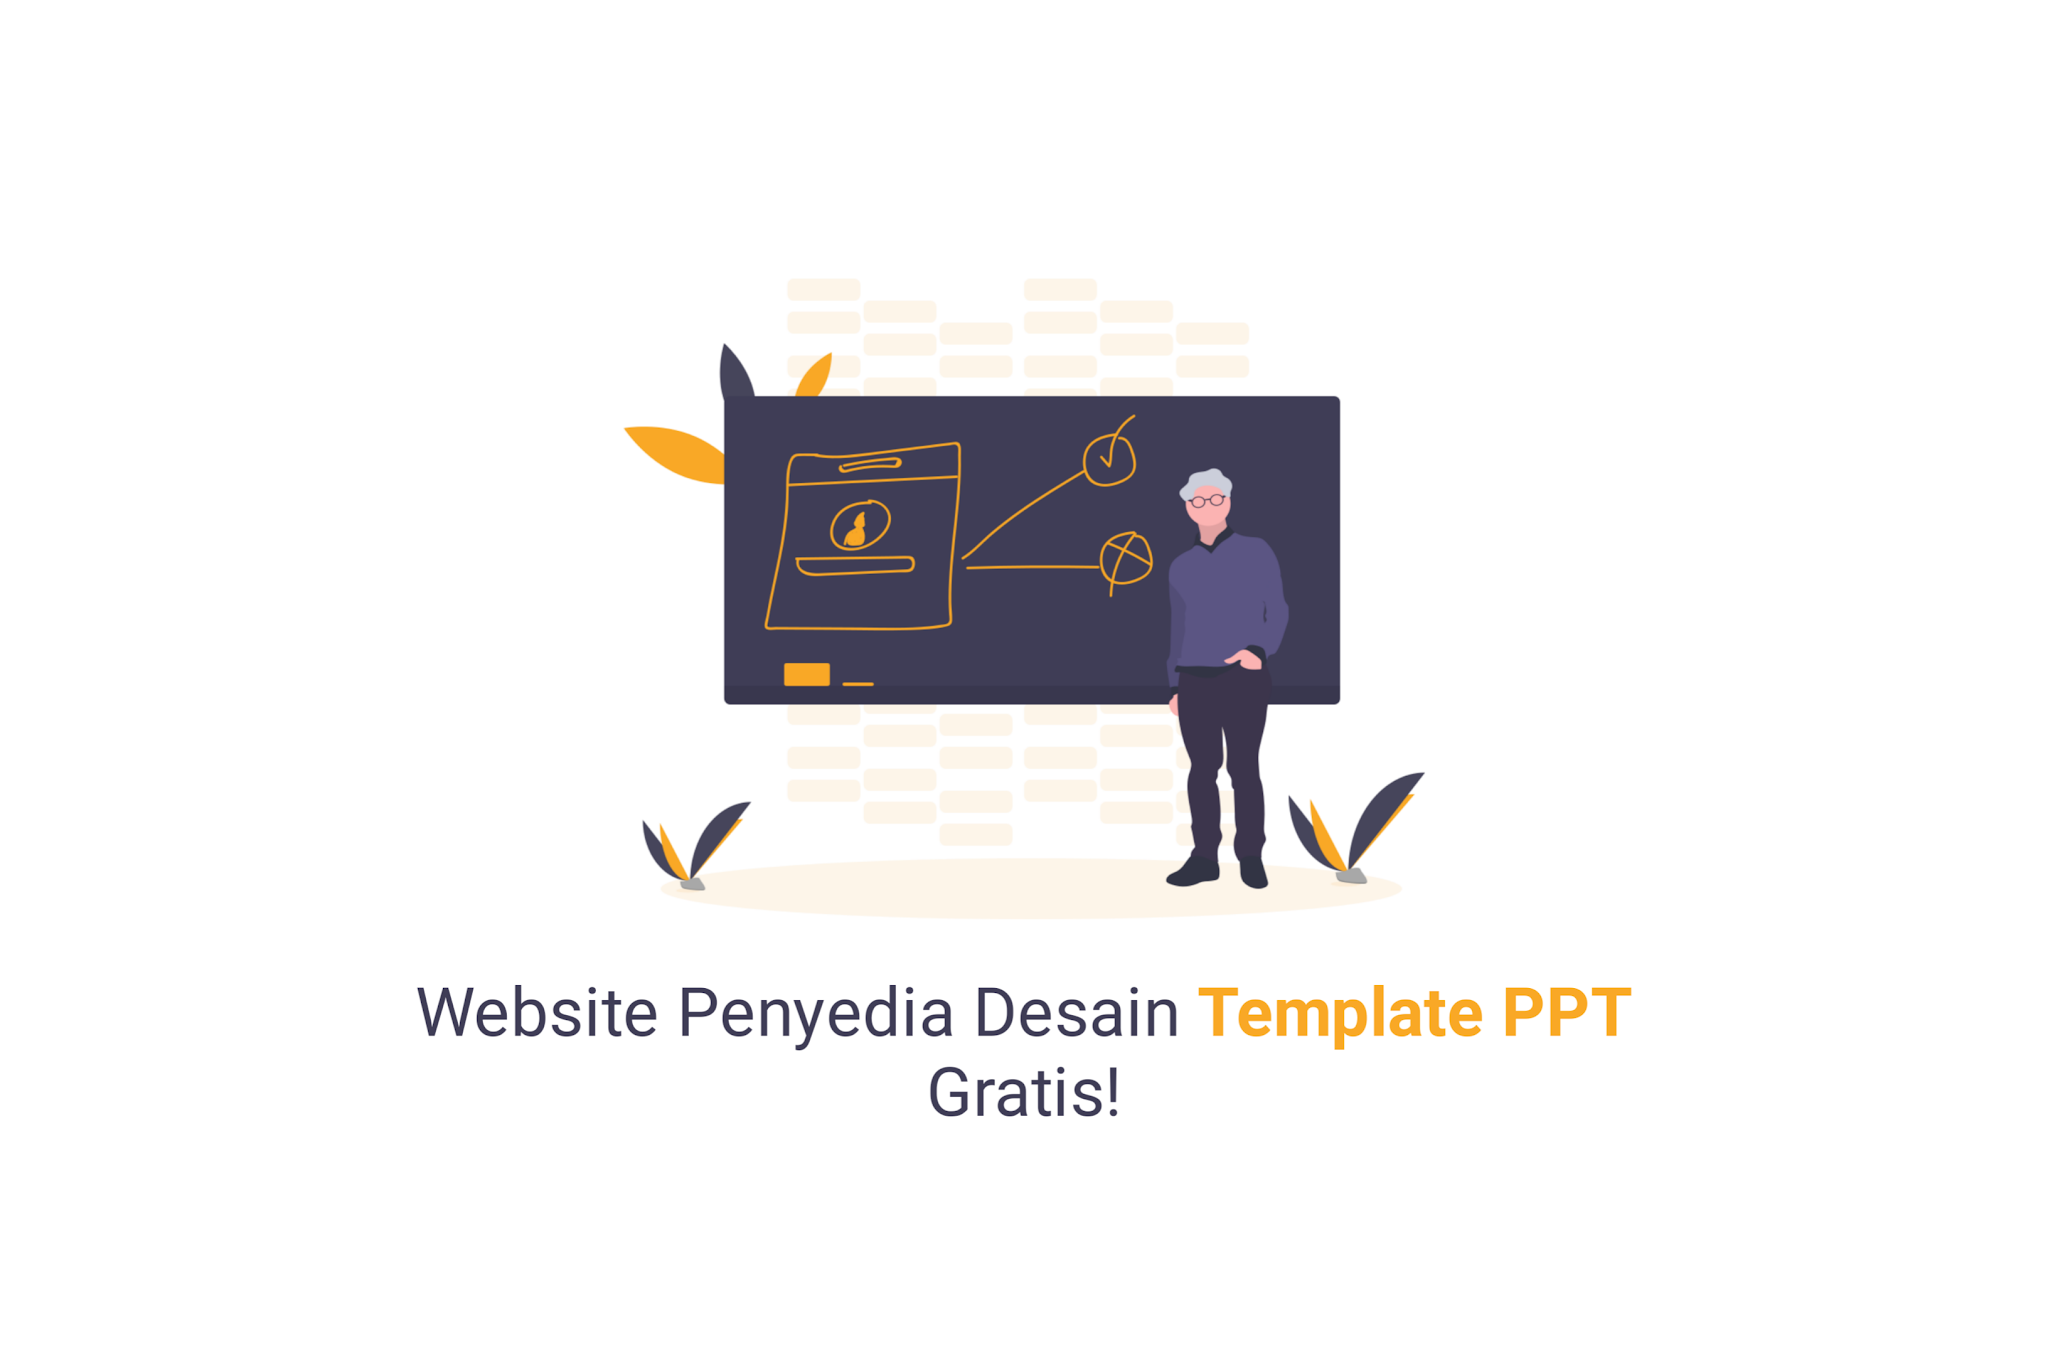 Website Penyedia Desain Template PPT Gratis!